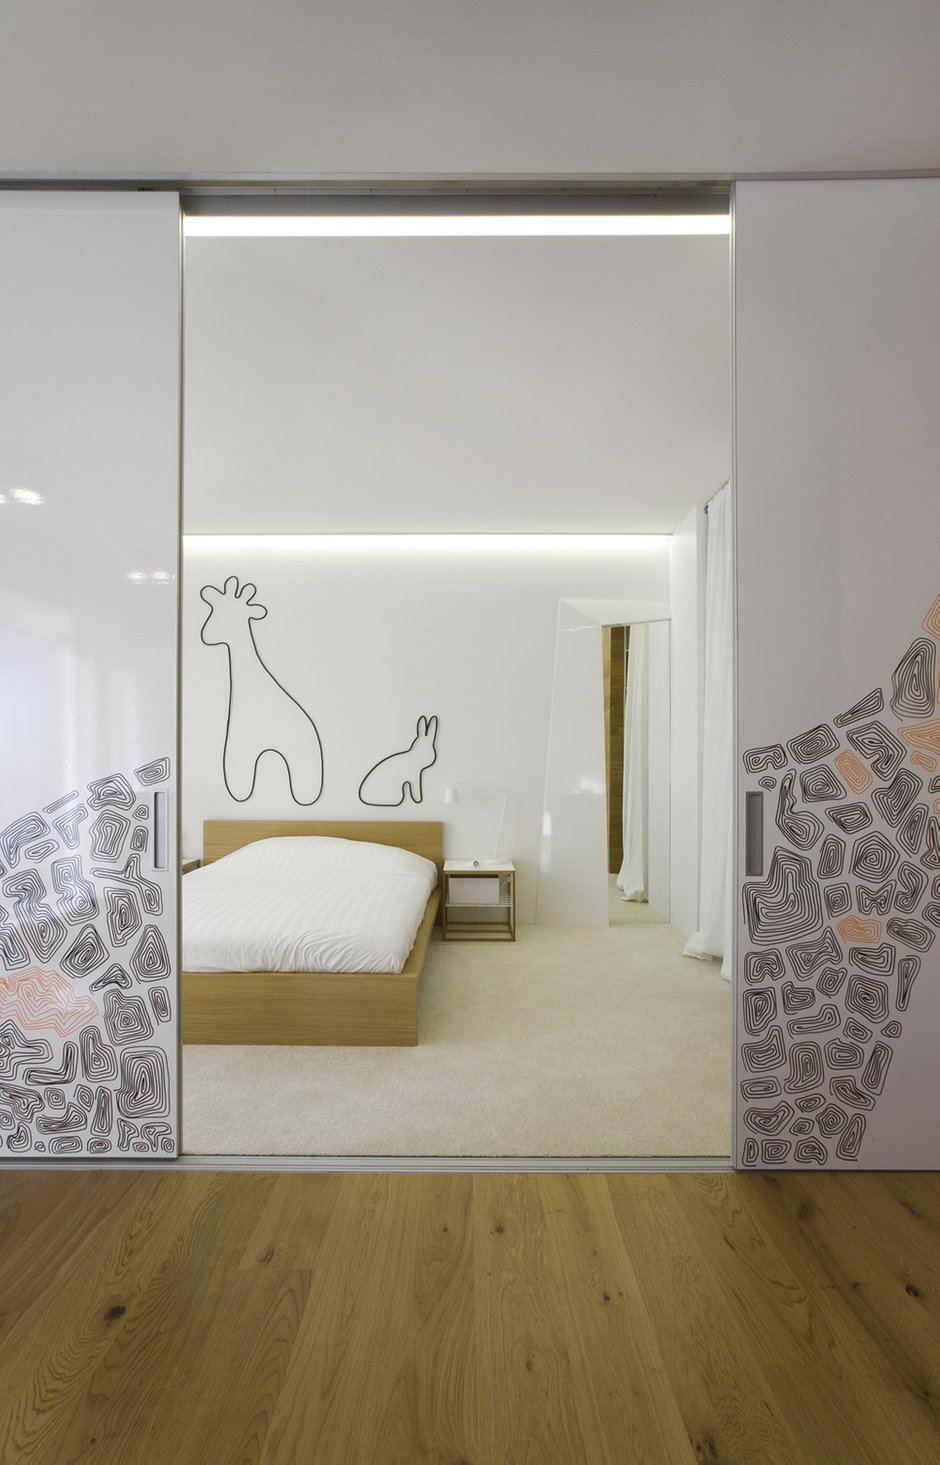 Фотография: Спальня в стиле Современный, Декор интерьера, Квартира, Дома и квартиры, IKEA, Перегородки – фото на INMYROOM